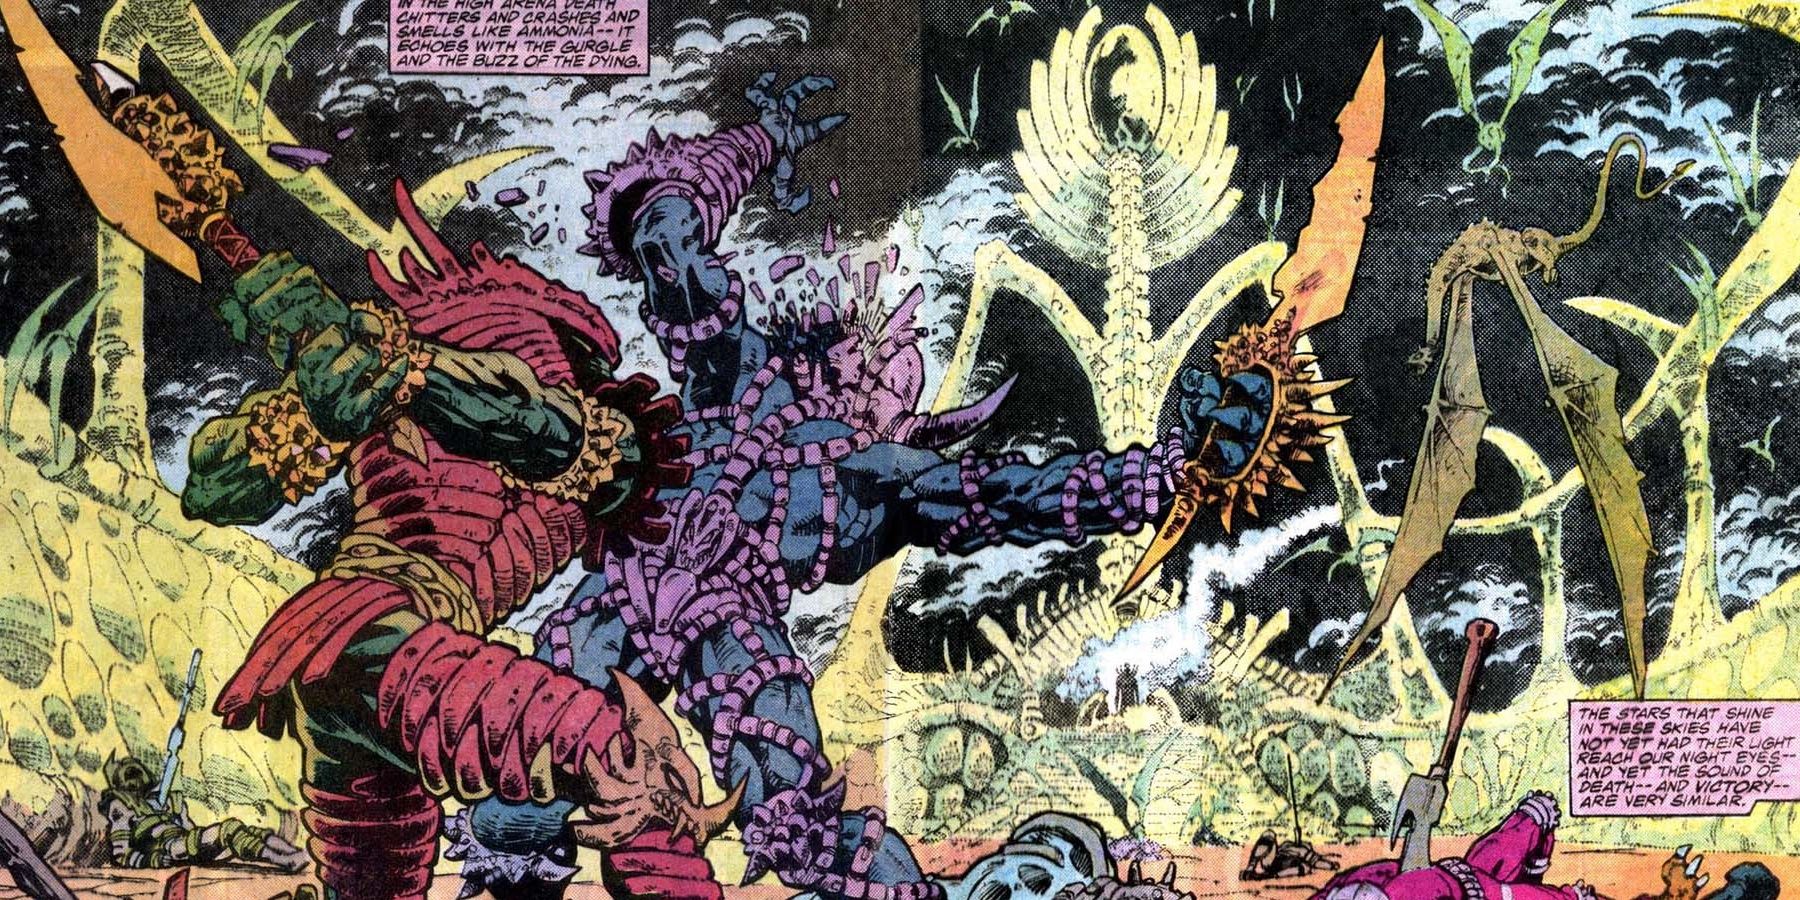 Urthona fighting aliens in Doctor Strange #81 comic book.